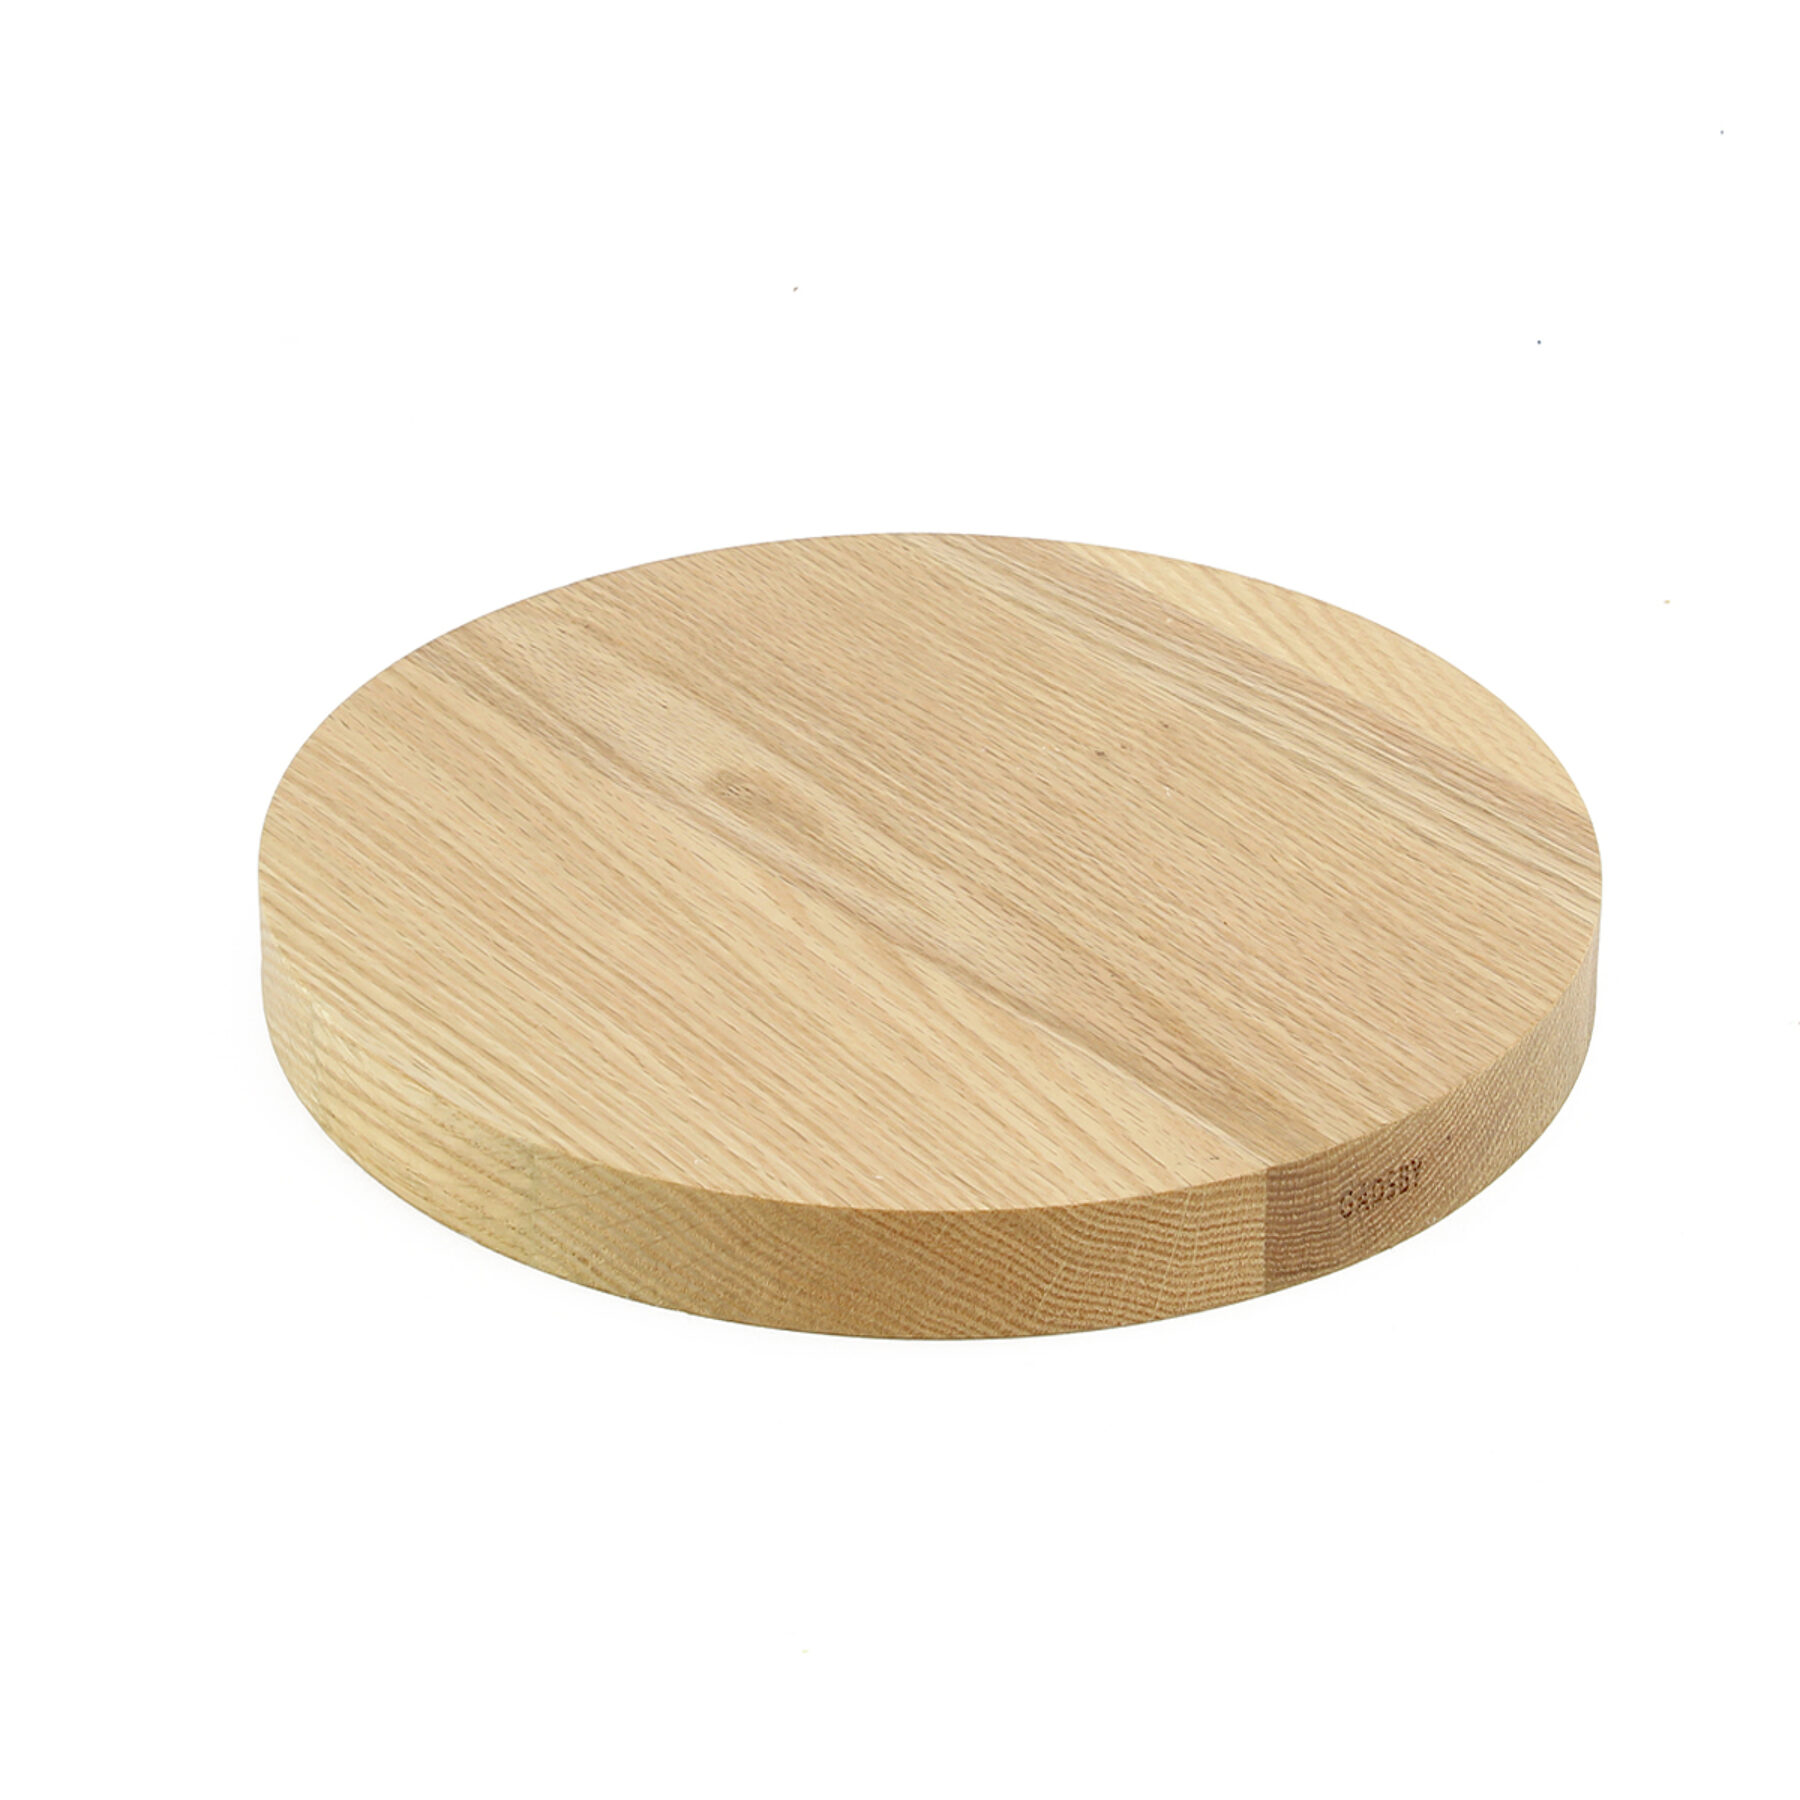 Round Wood Board - Oak